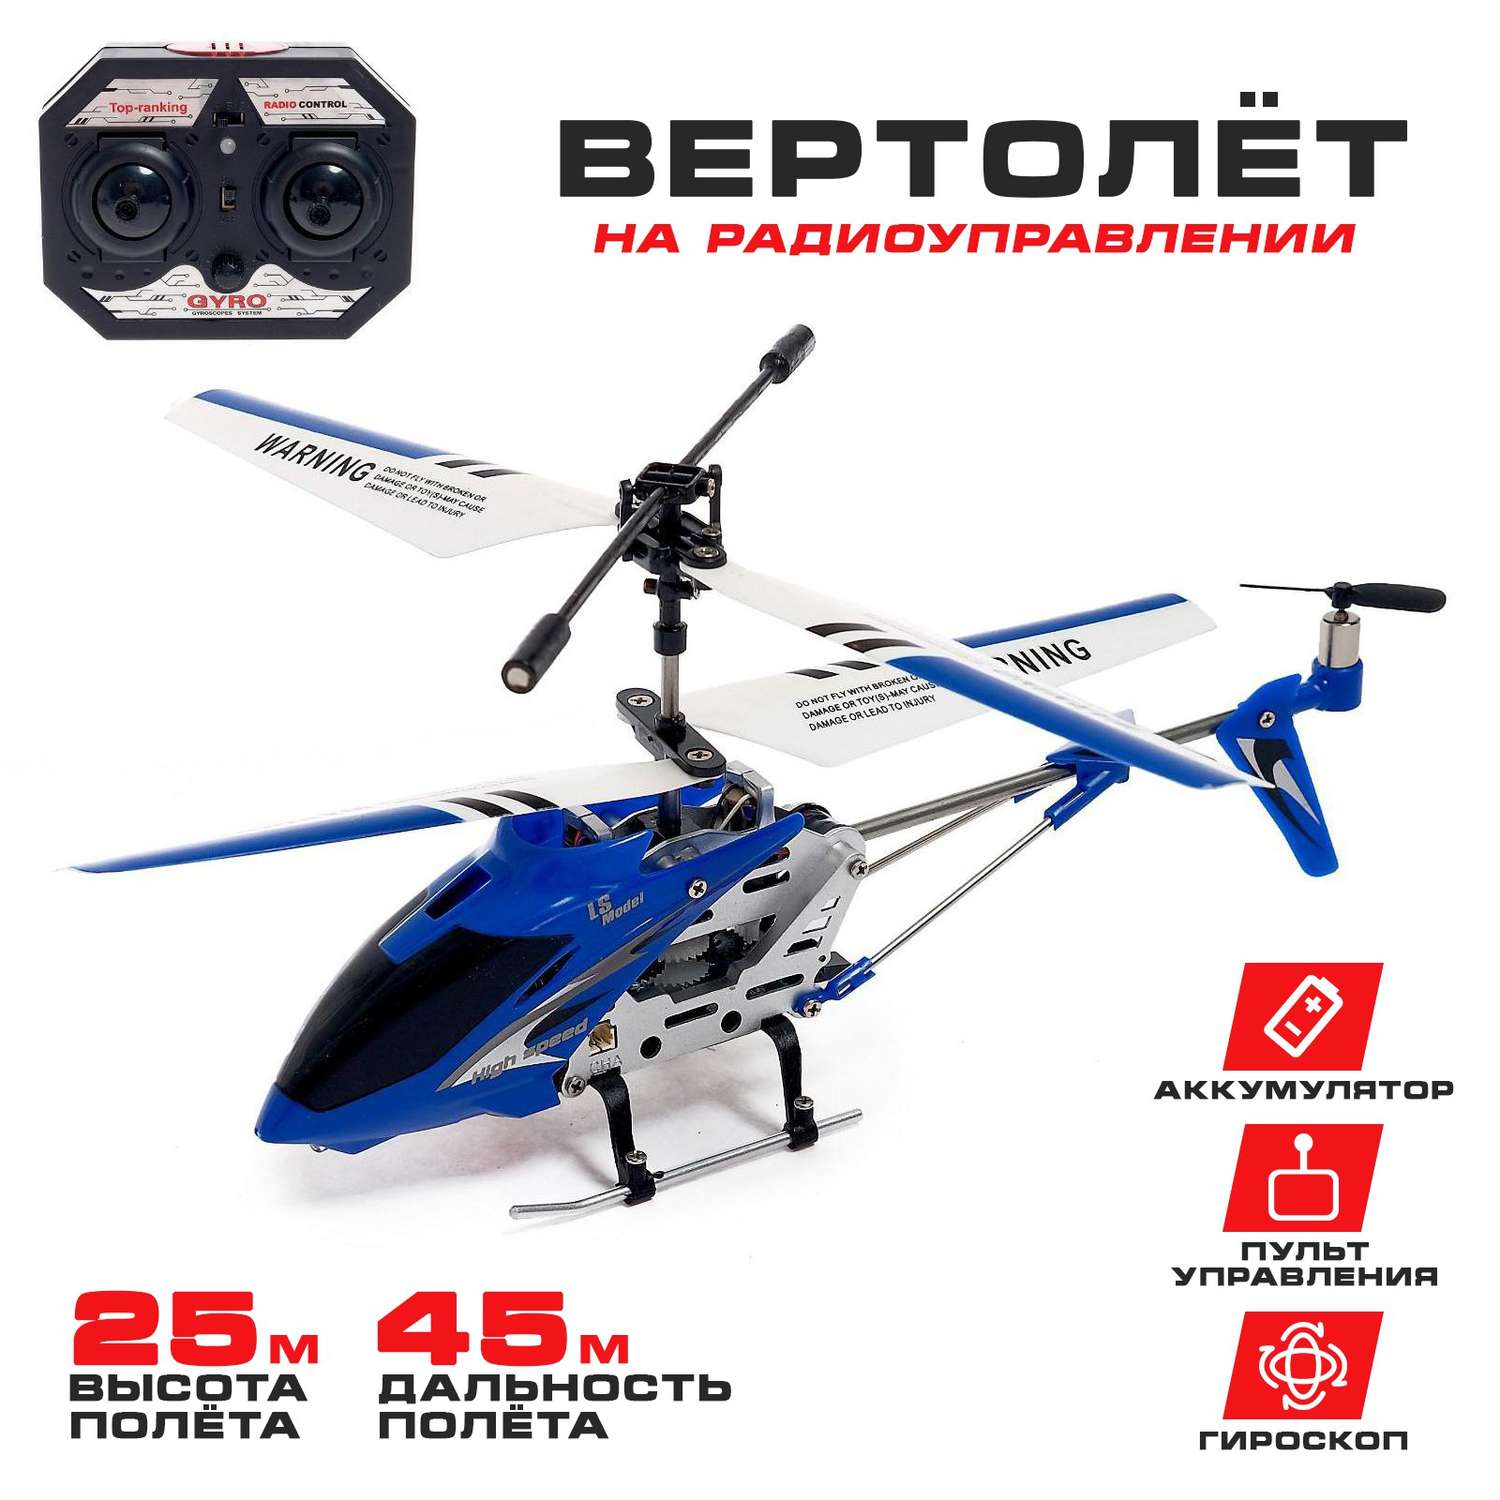 Вертолёт Автоград радиоуправляемый SKY с гироскопом цвет синий - фото 1